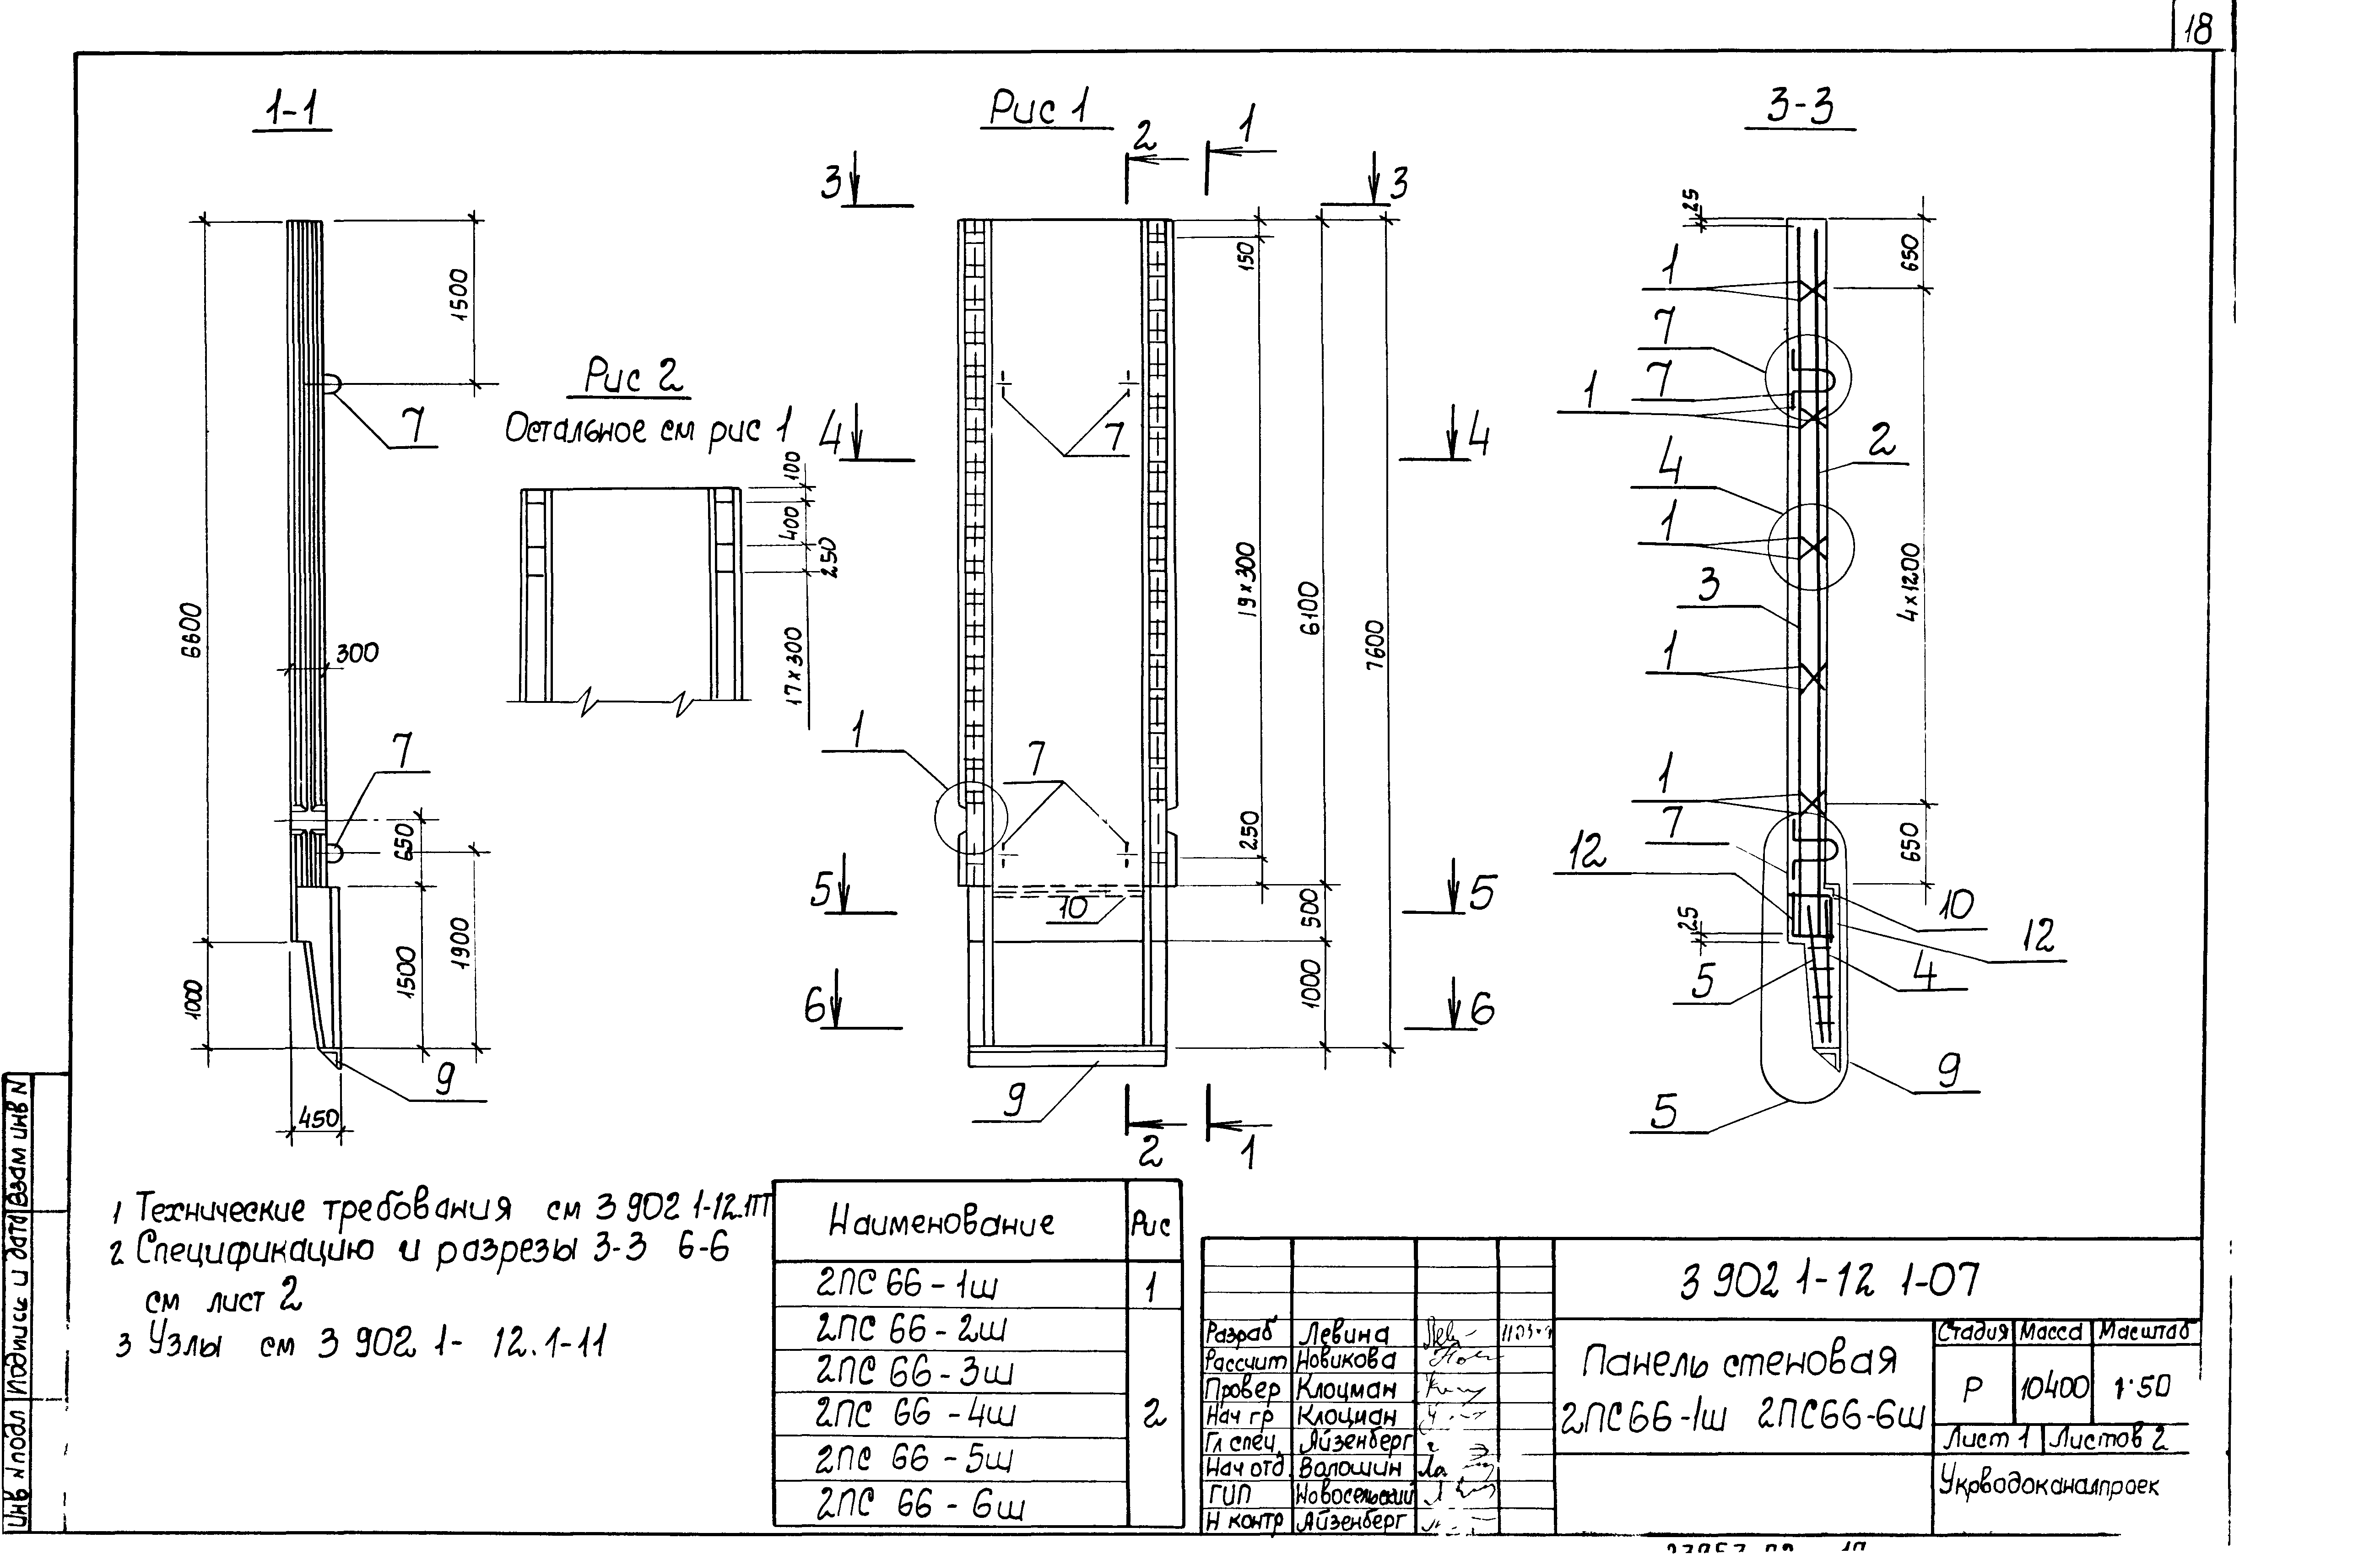 Панель стеновая 2ПС66-6ш Серия 3.902.1-12, вып.1